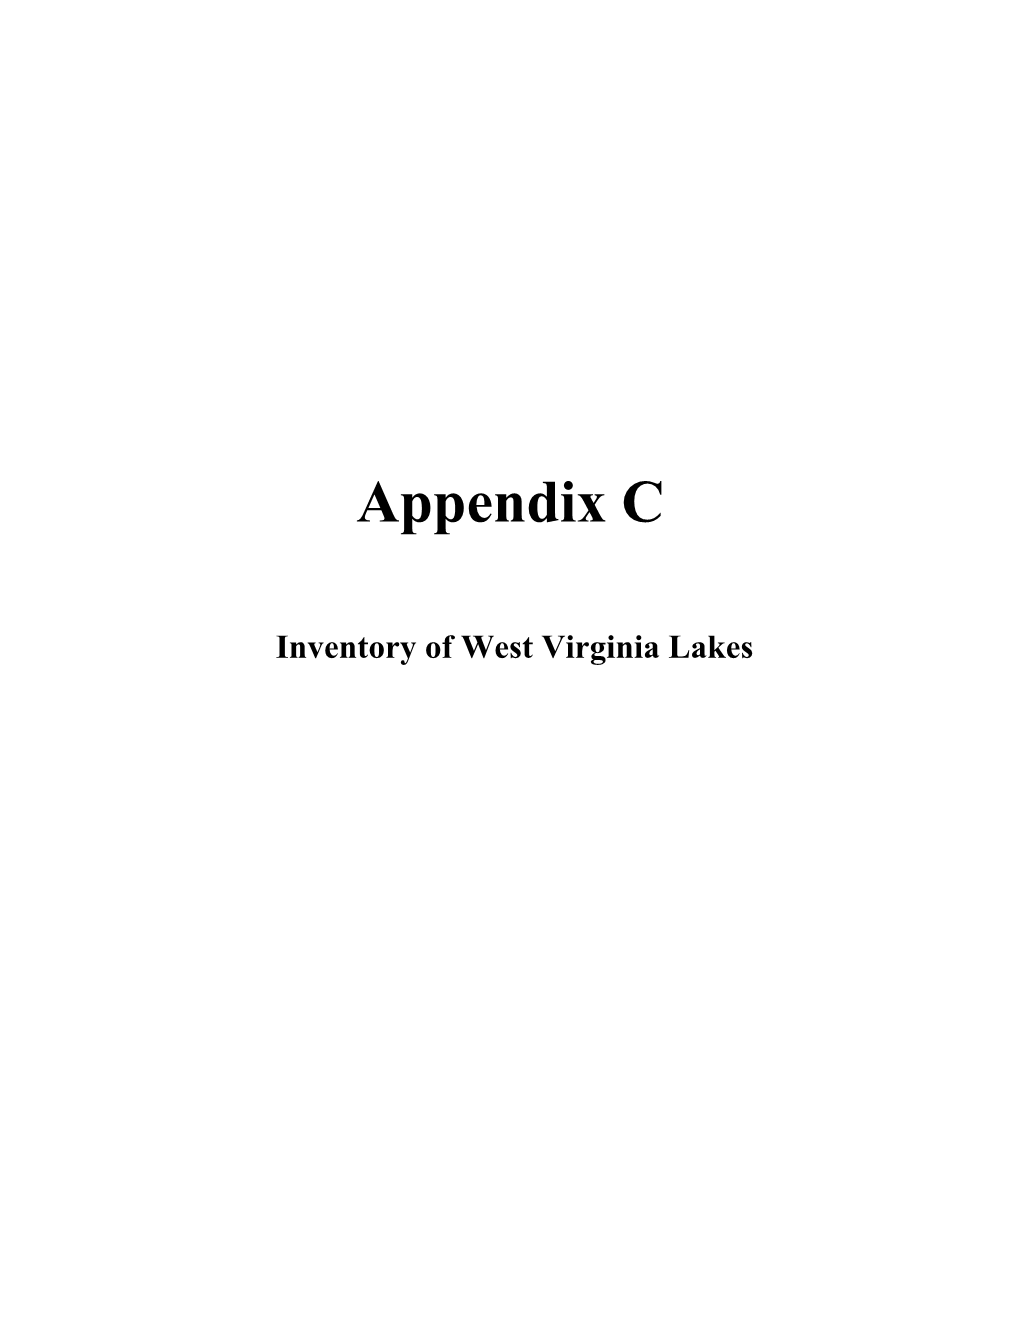 Appendix C Text